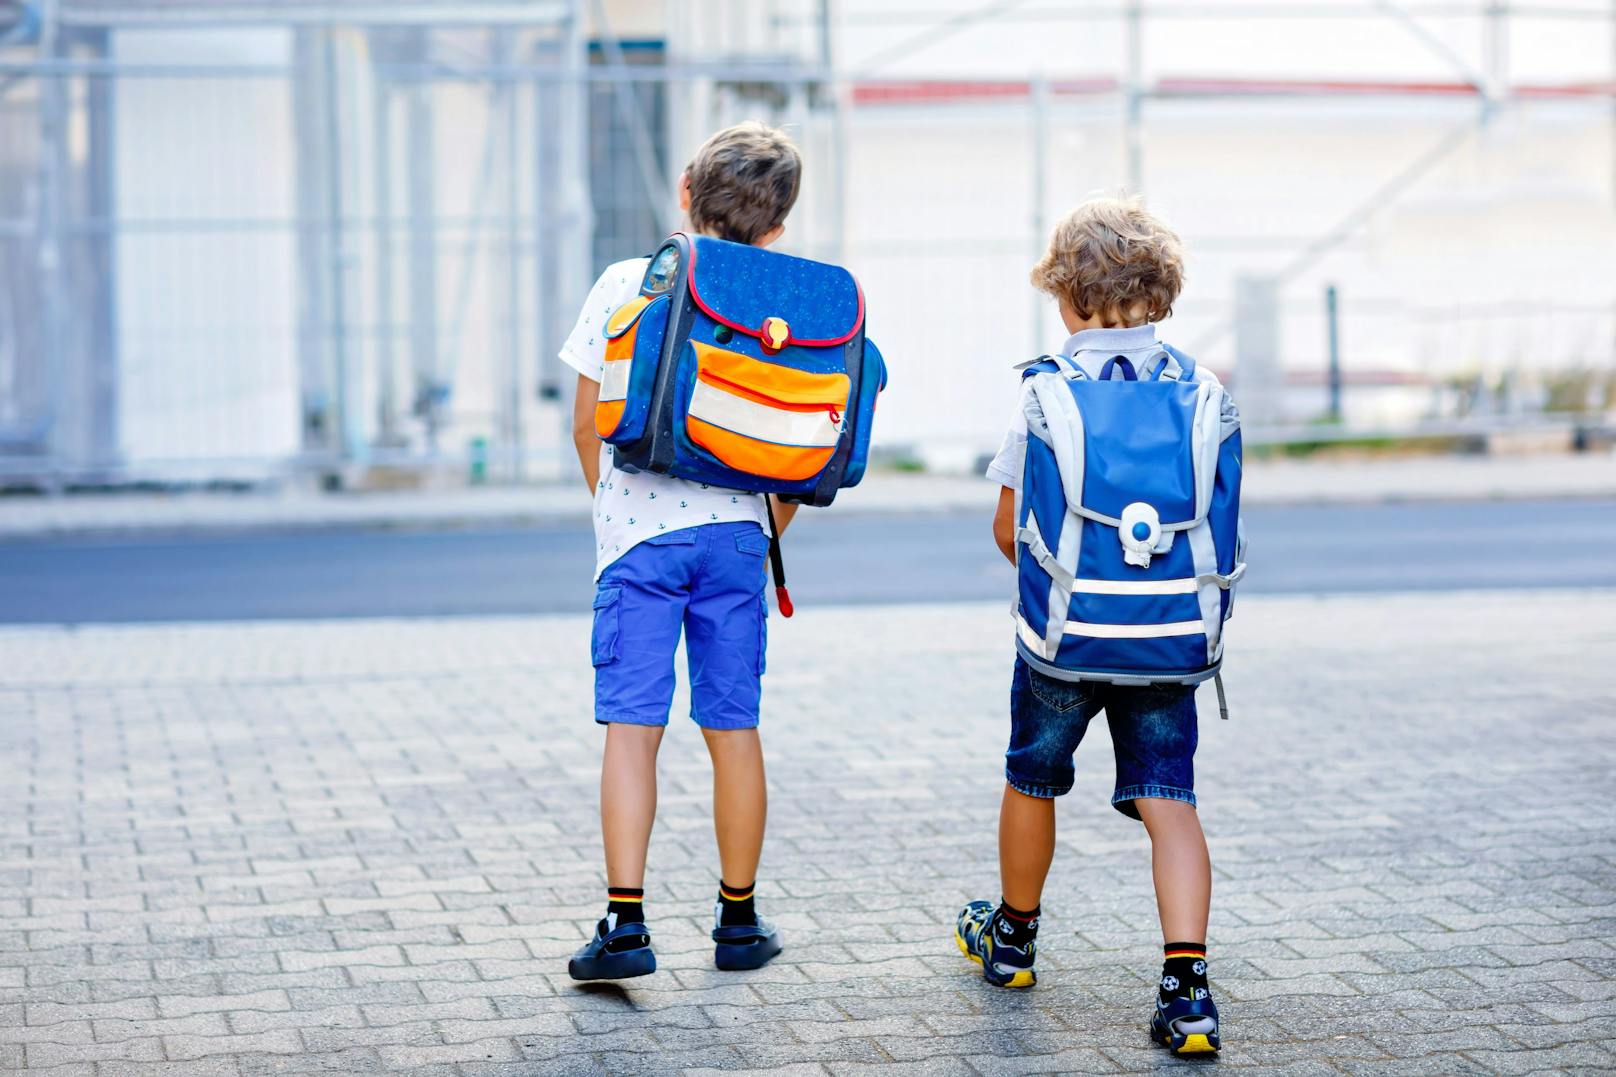 Schulwege bei Dämmerung: Helle Kleidung und Reflektoren – Sicherheit am  Schulweg